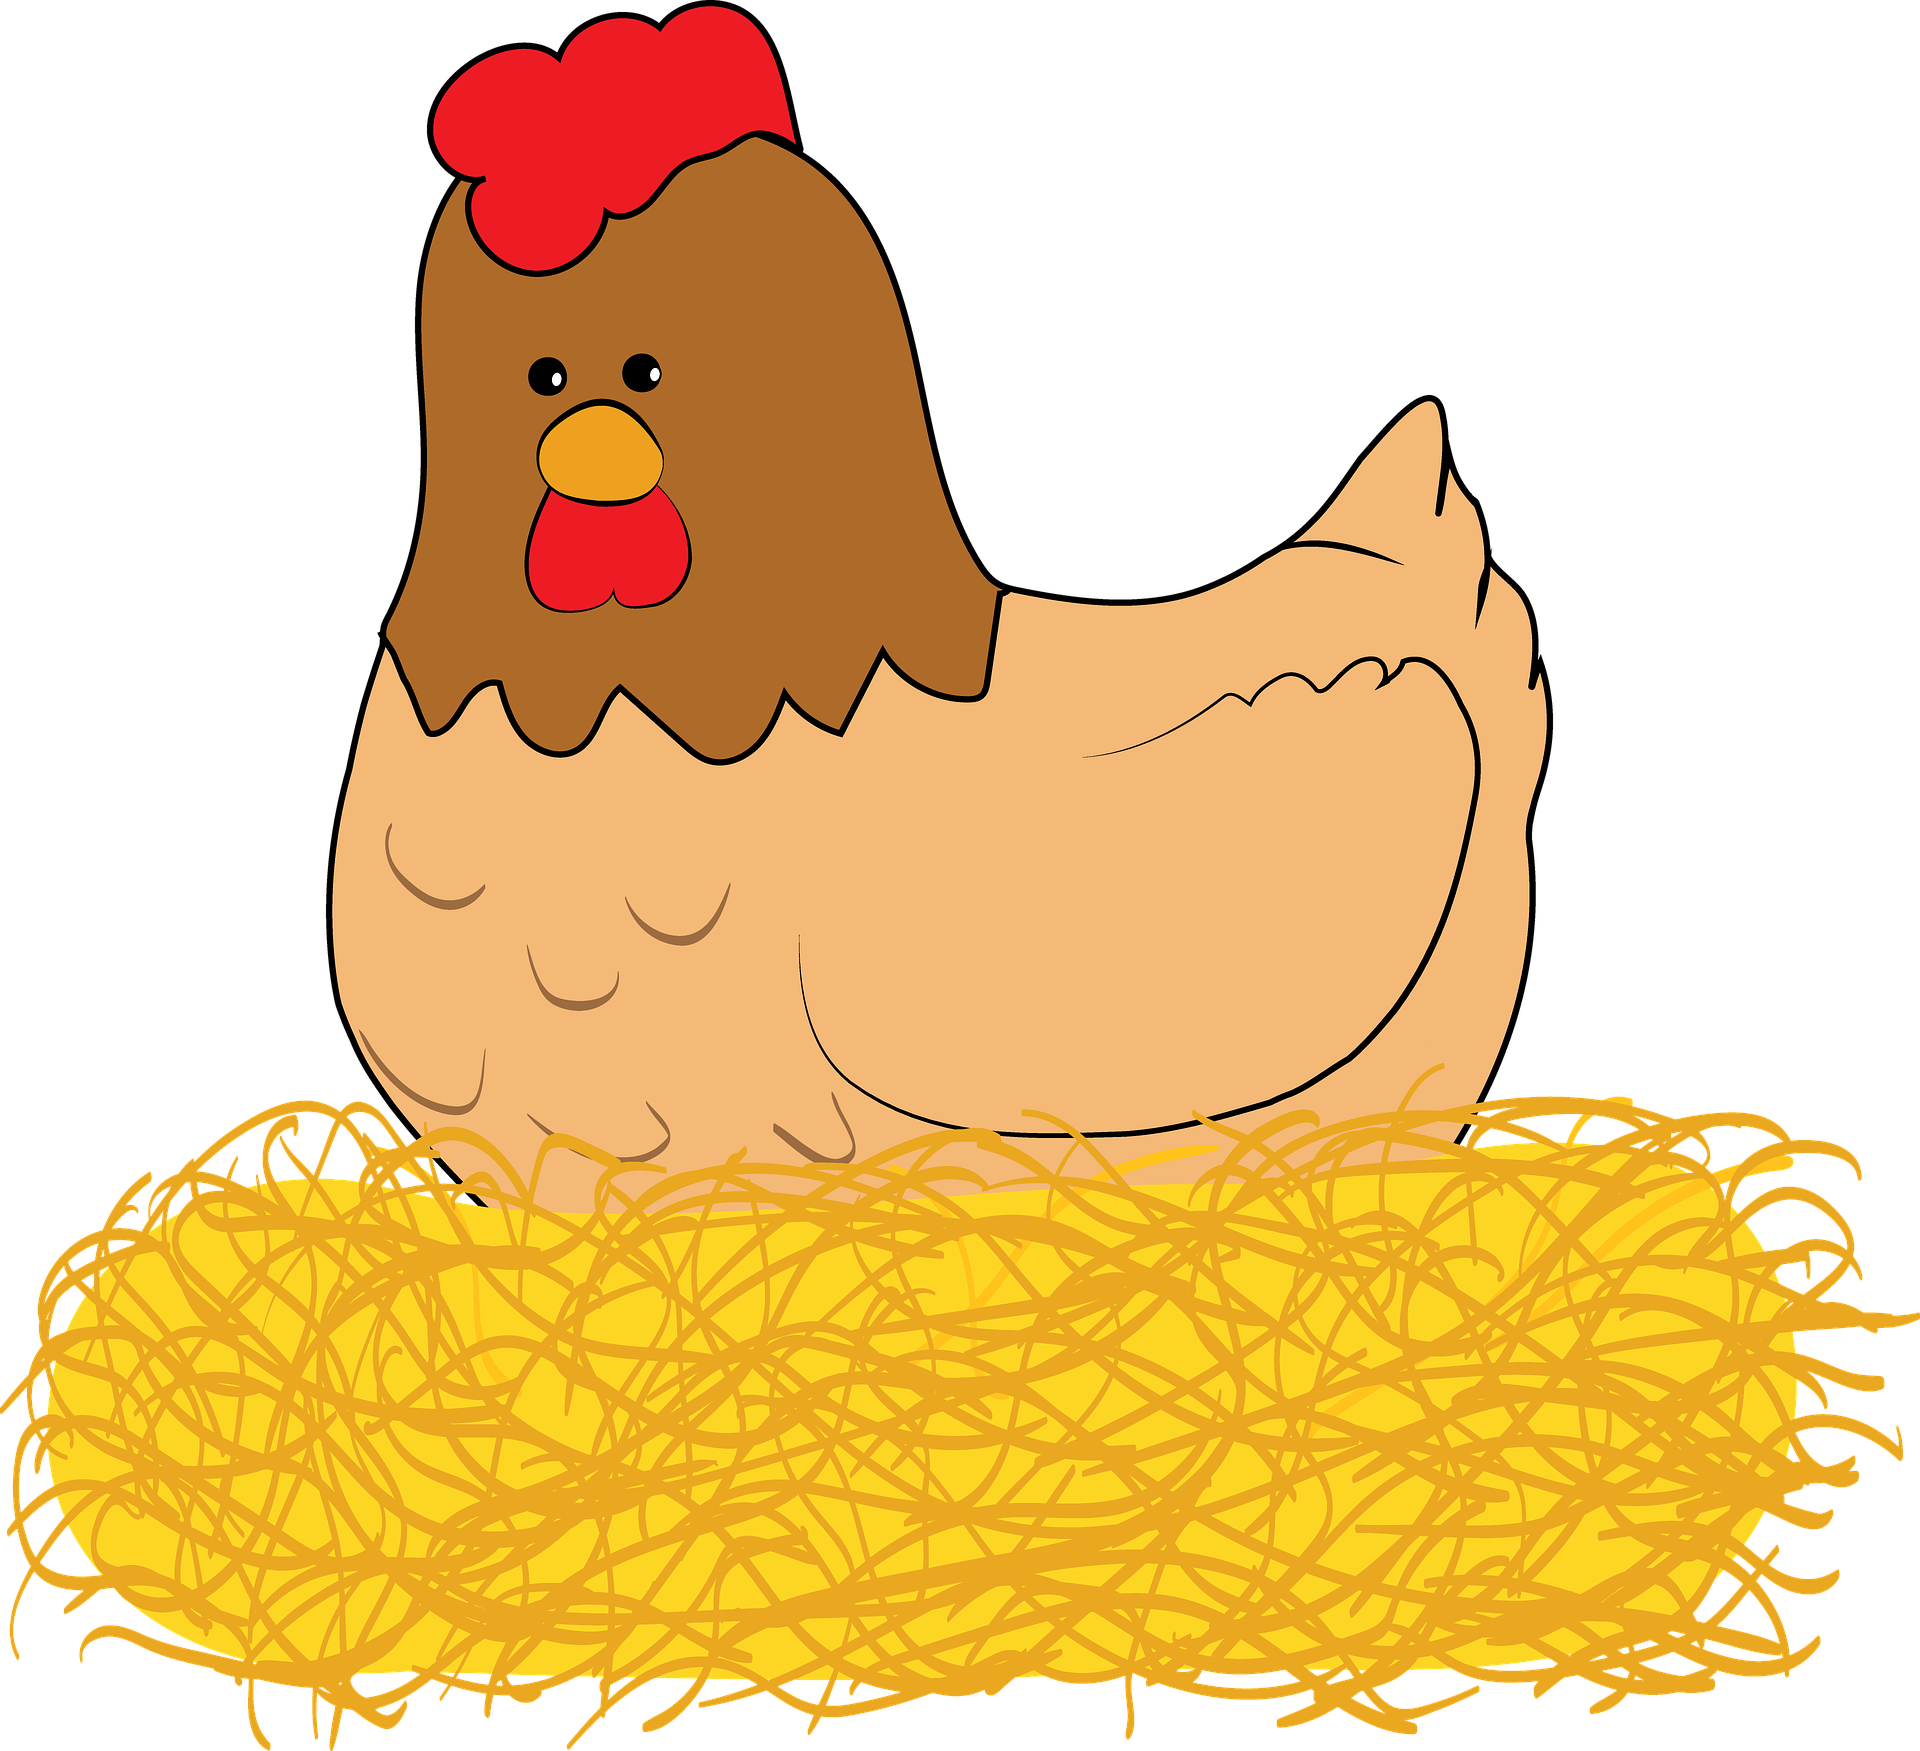 La imagen muestra un pollo.